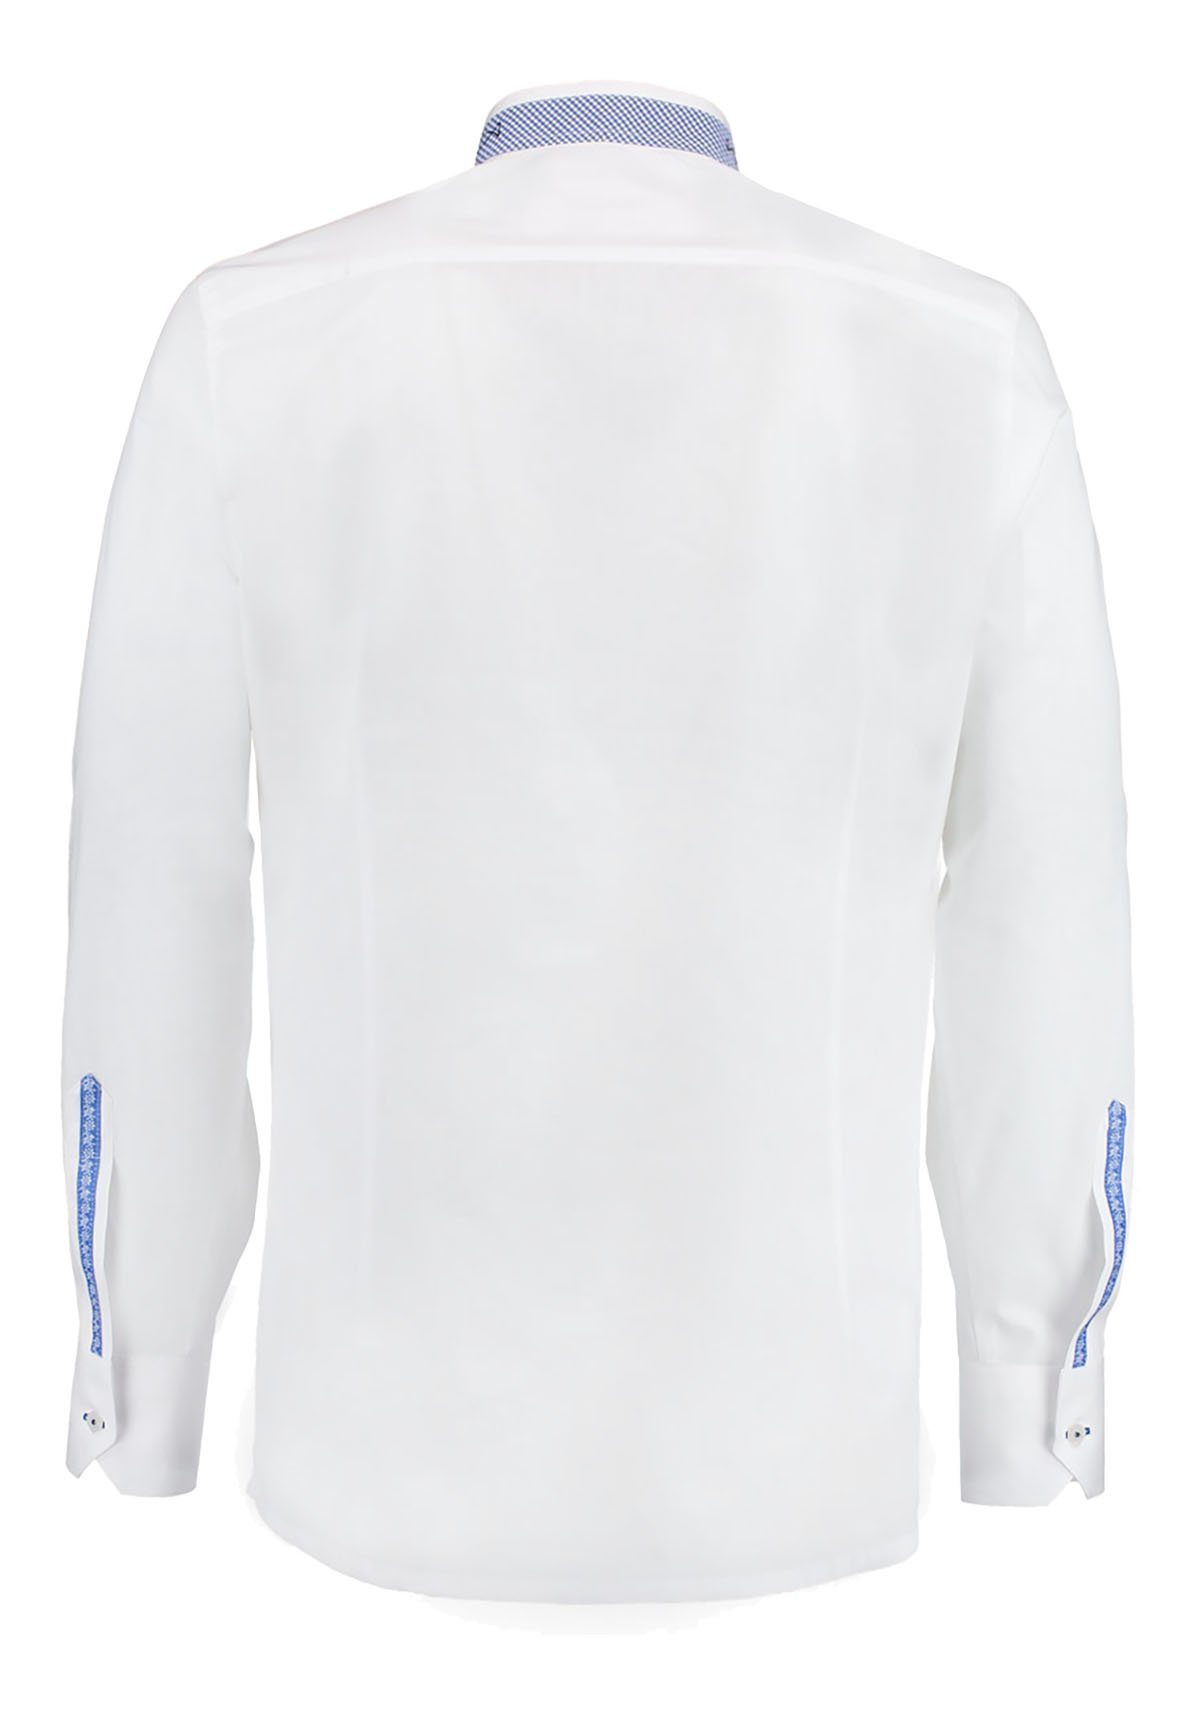 Trachtenhemd Moschen-Bayern Herrenhemd Wiesn-Hemd Trachtenhemd Weiß-Blau Stickerei Stehkragen Hirsch FIT SLIM Langarm Herren